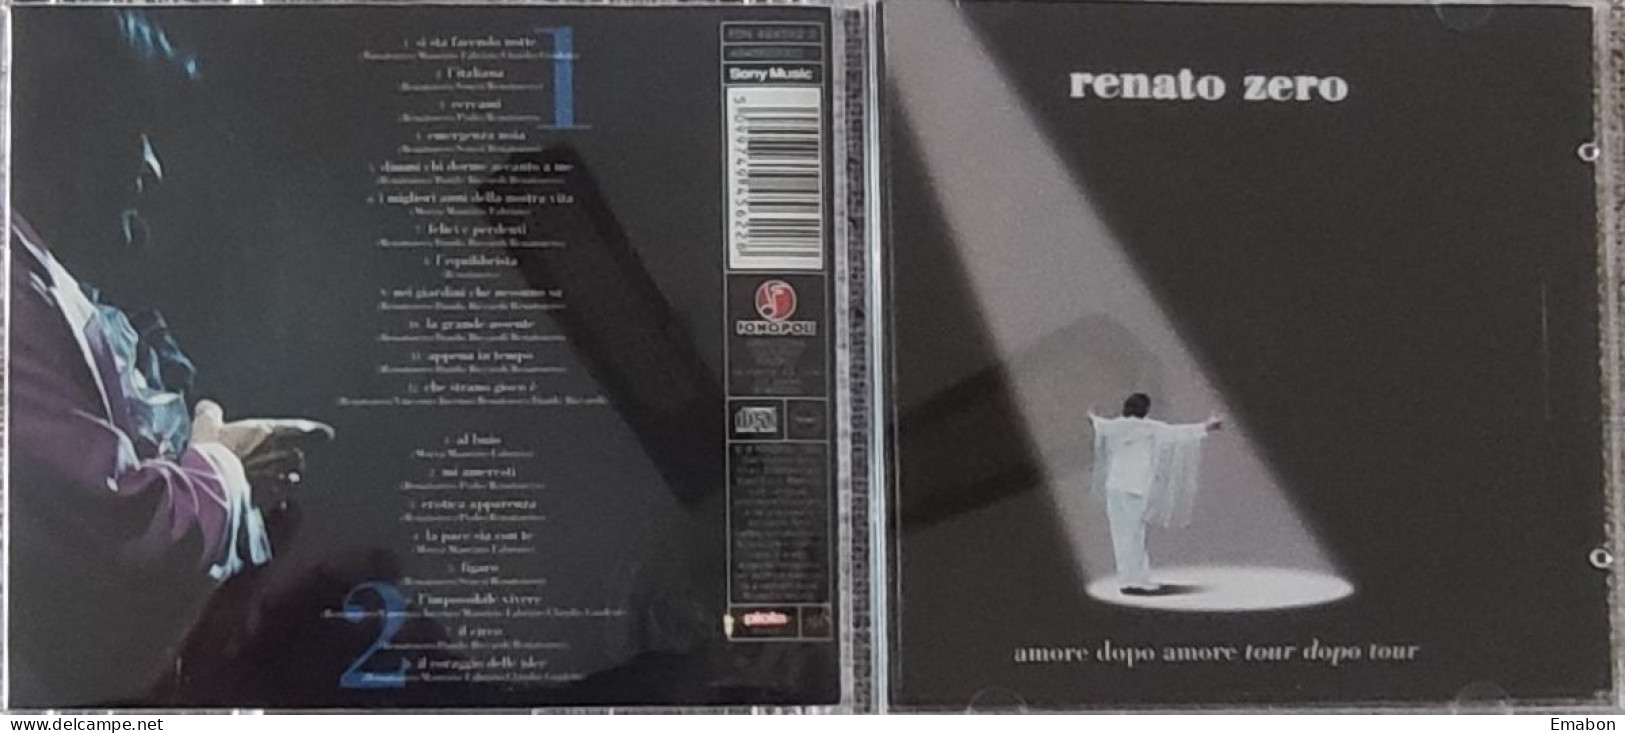 BORGATTA - 2 Cd RENATO ZERO - AMORE DOPO AMORE TOUR DOPO TOUR - FONOPOLI 1999  -  USATO In Buono Stato - Altri - Musica Italiana